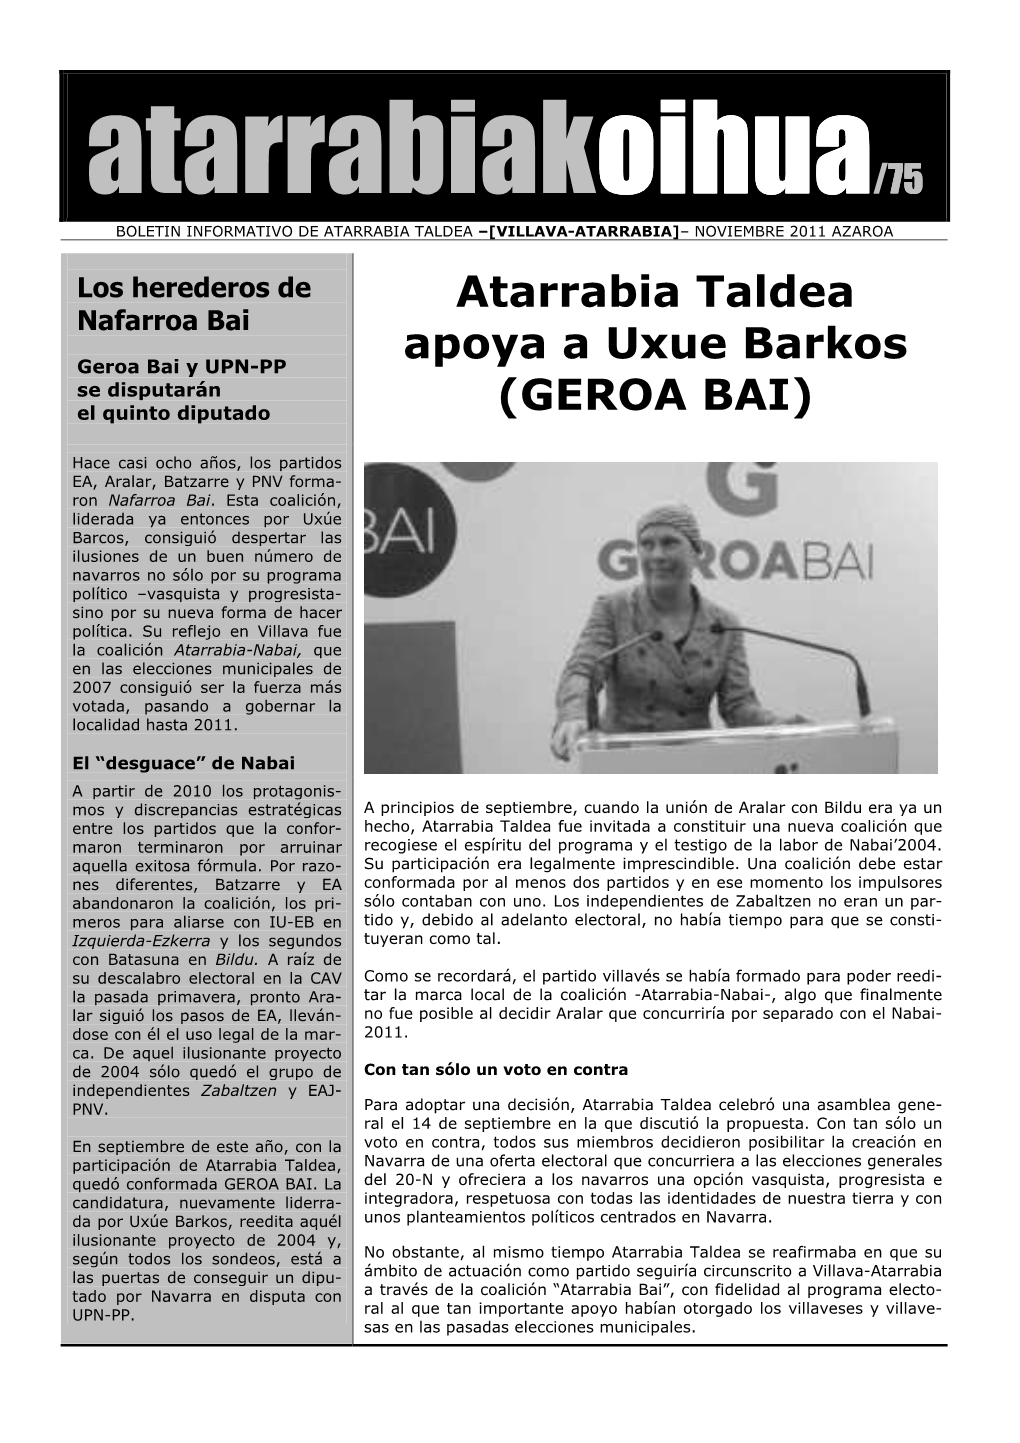 Atarrabia Taldea Apoya a Uxue Barkos (GEROA BAI)